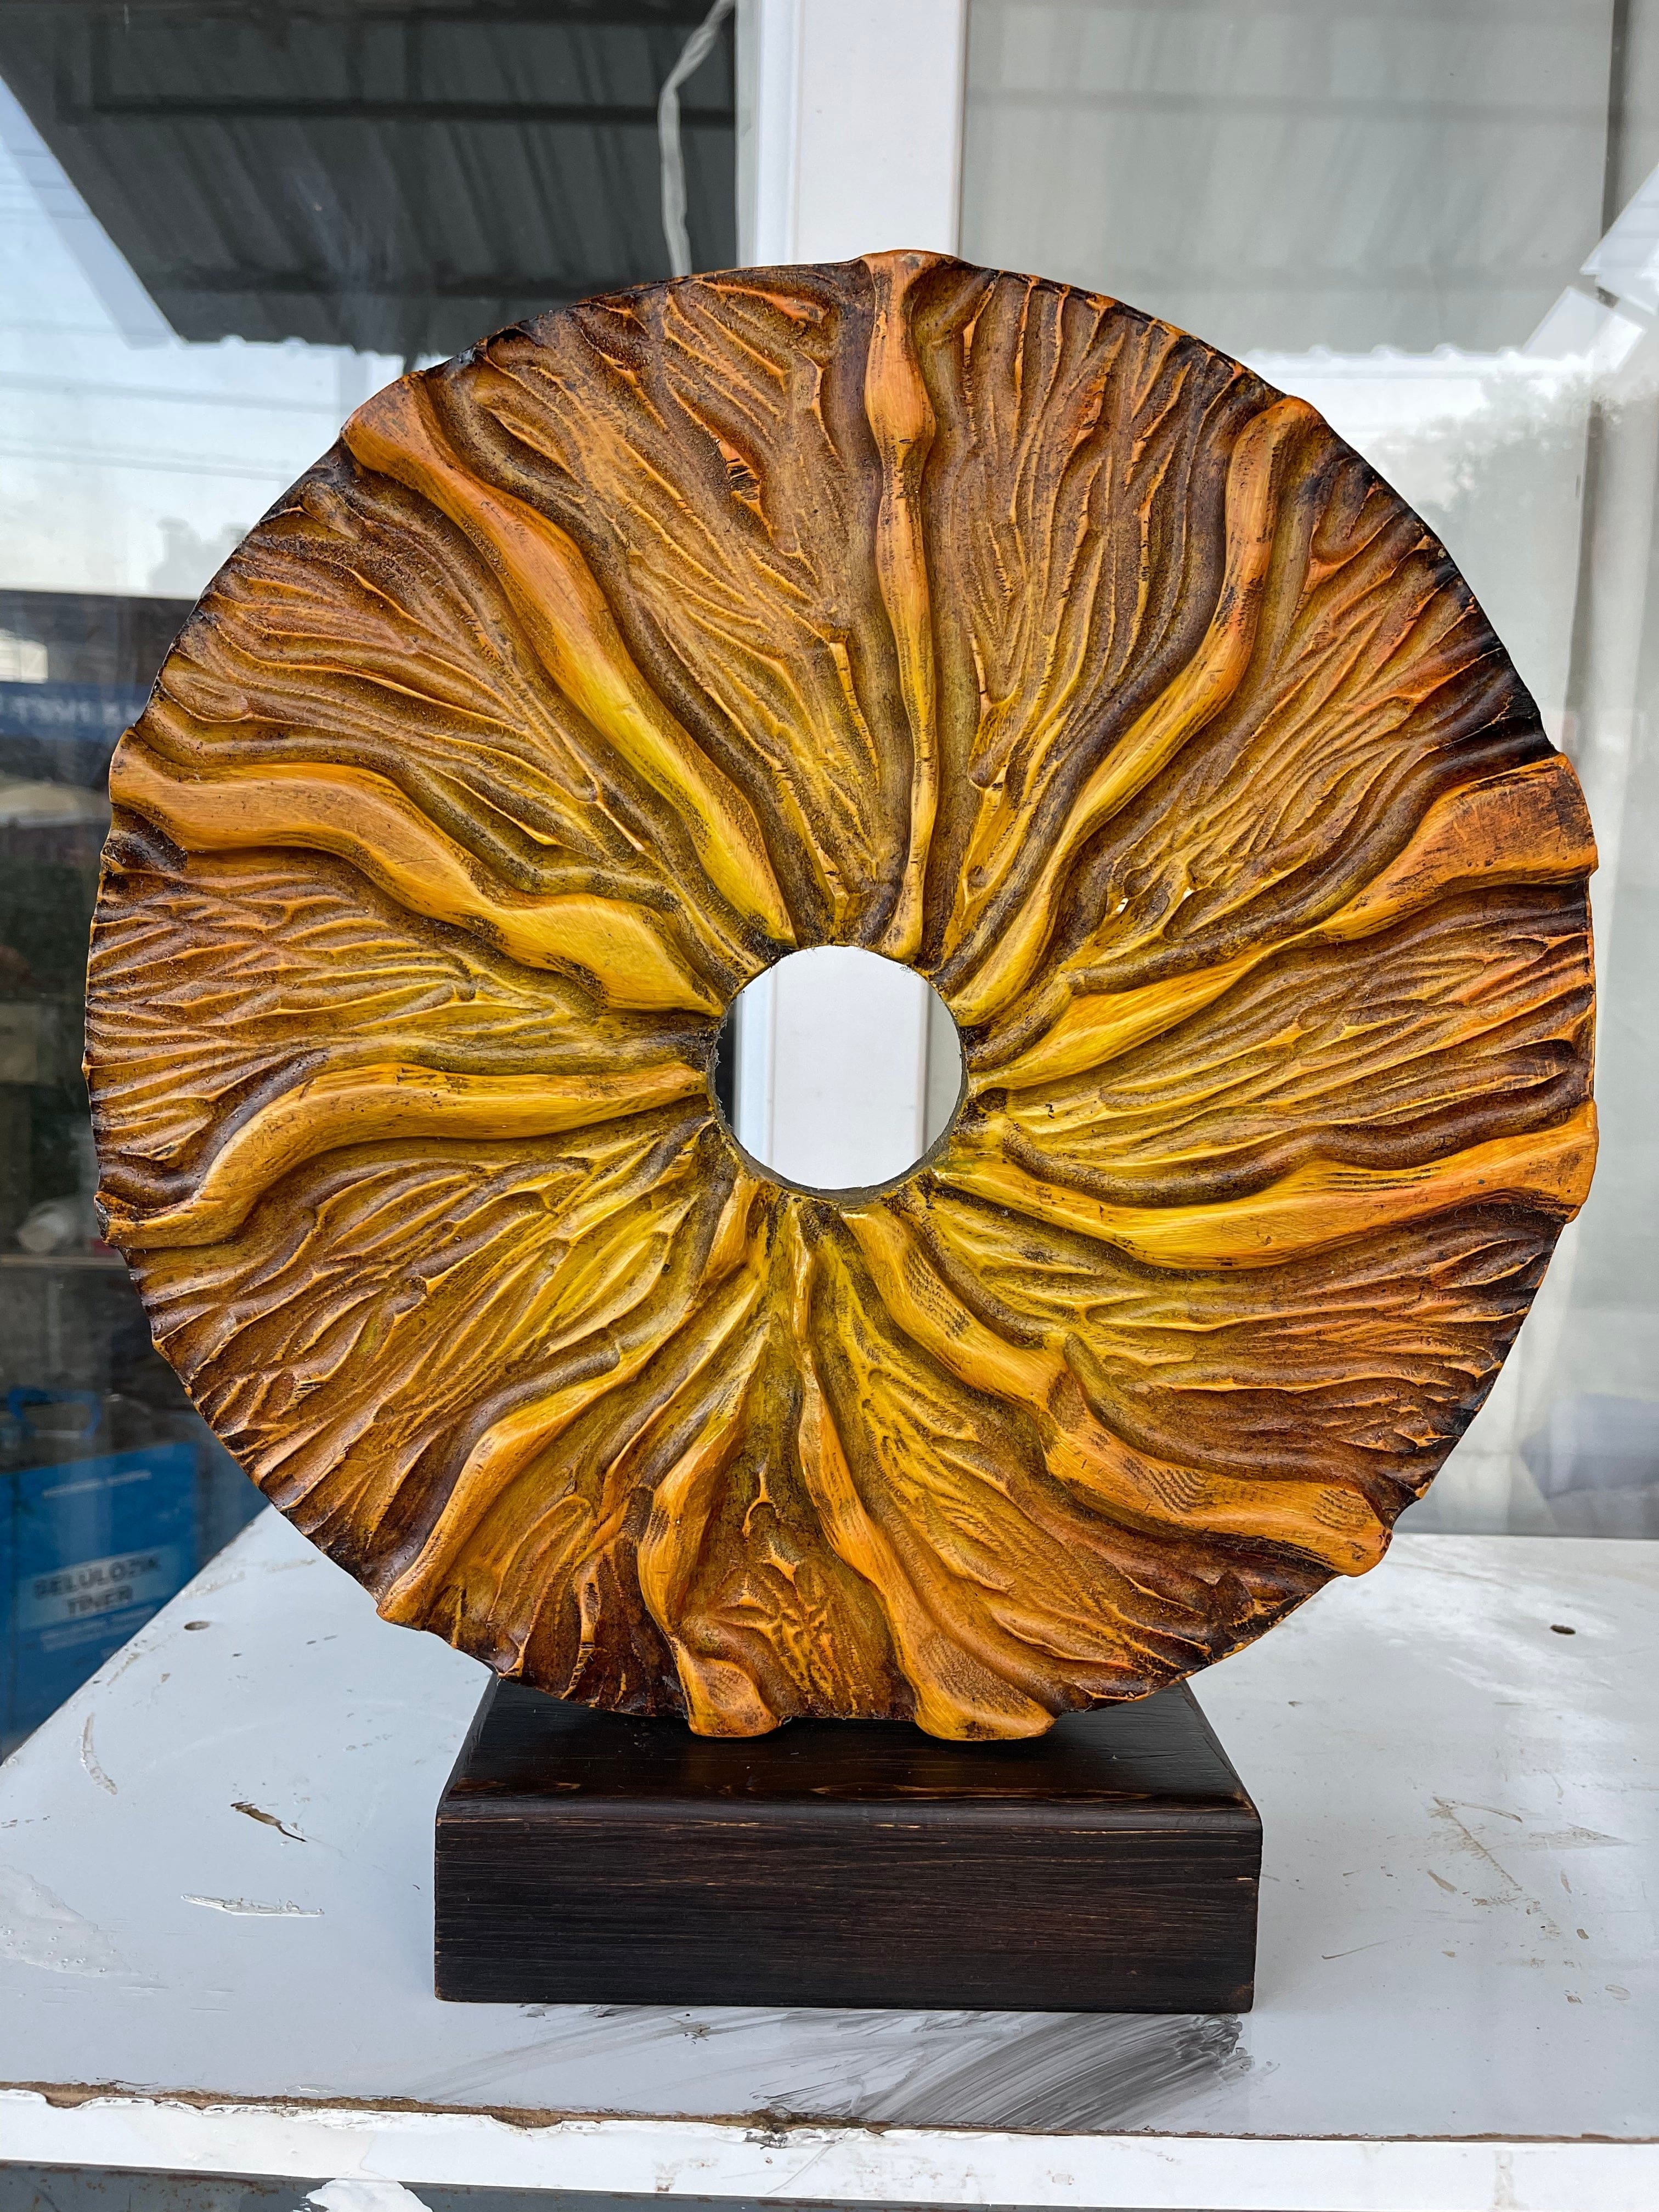 Redwood Sculpture – Metzger's Burl Wood Gallery